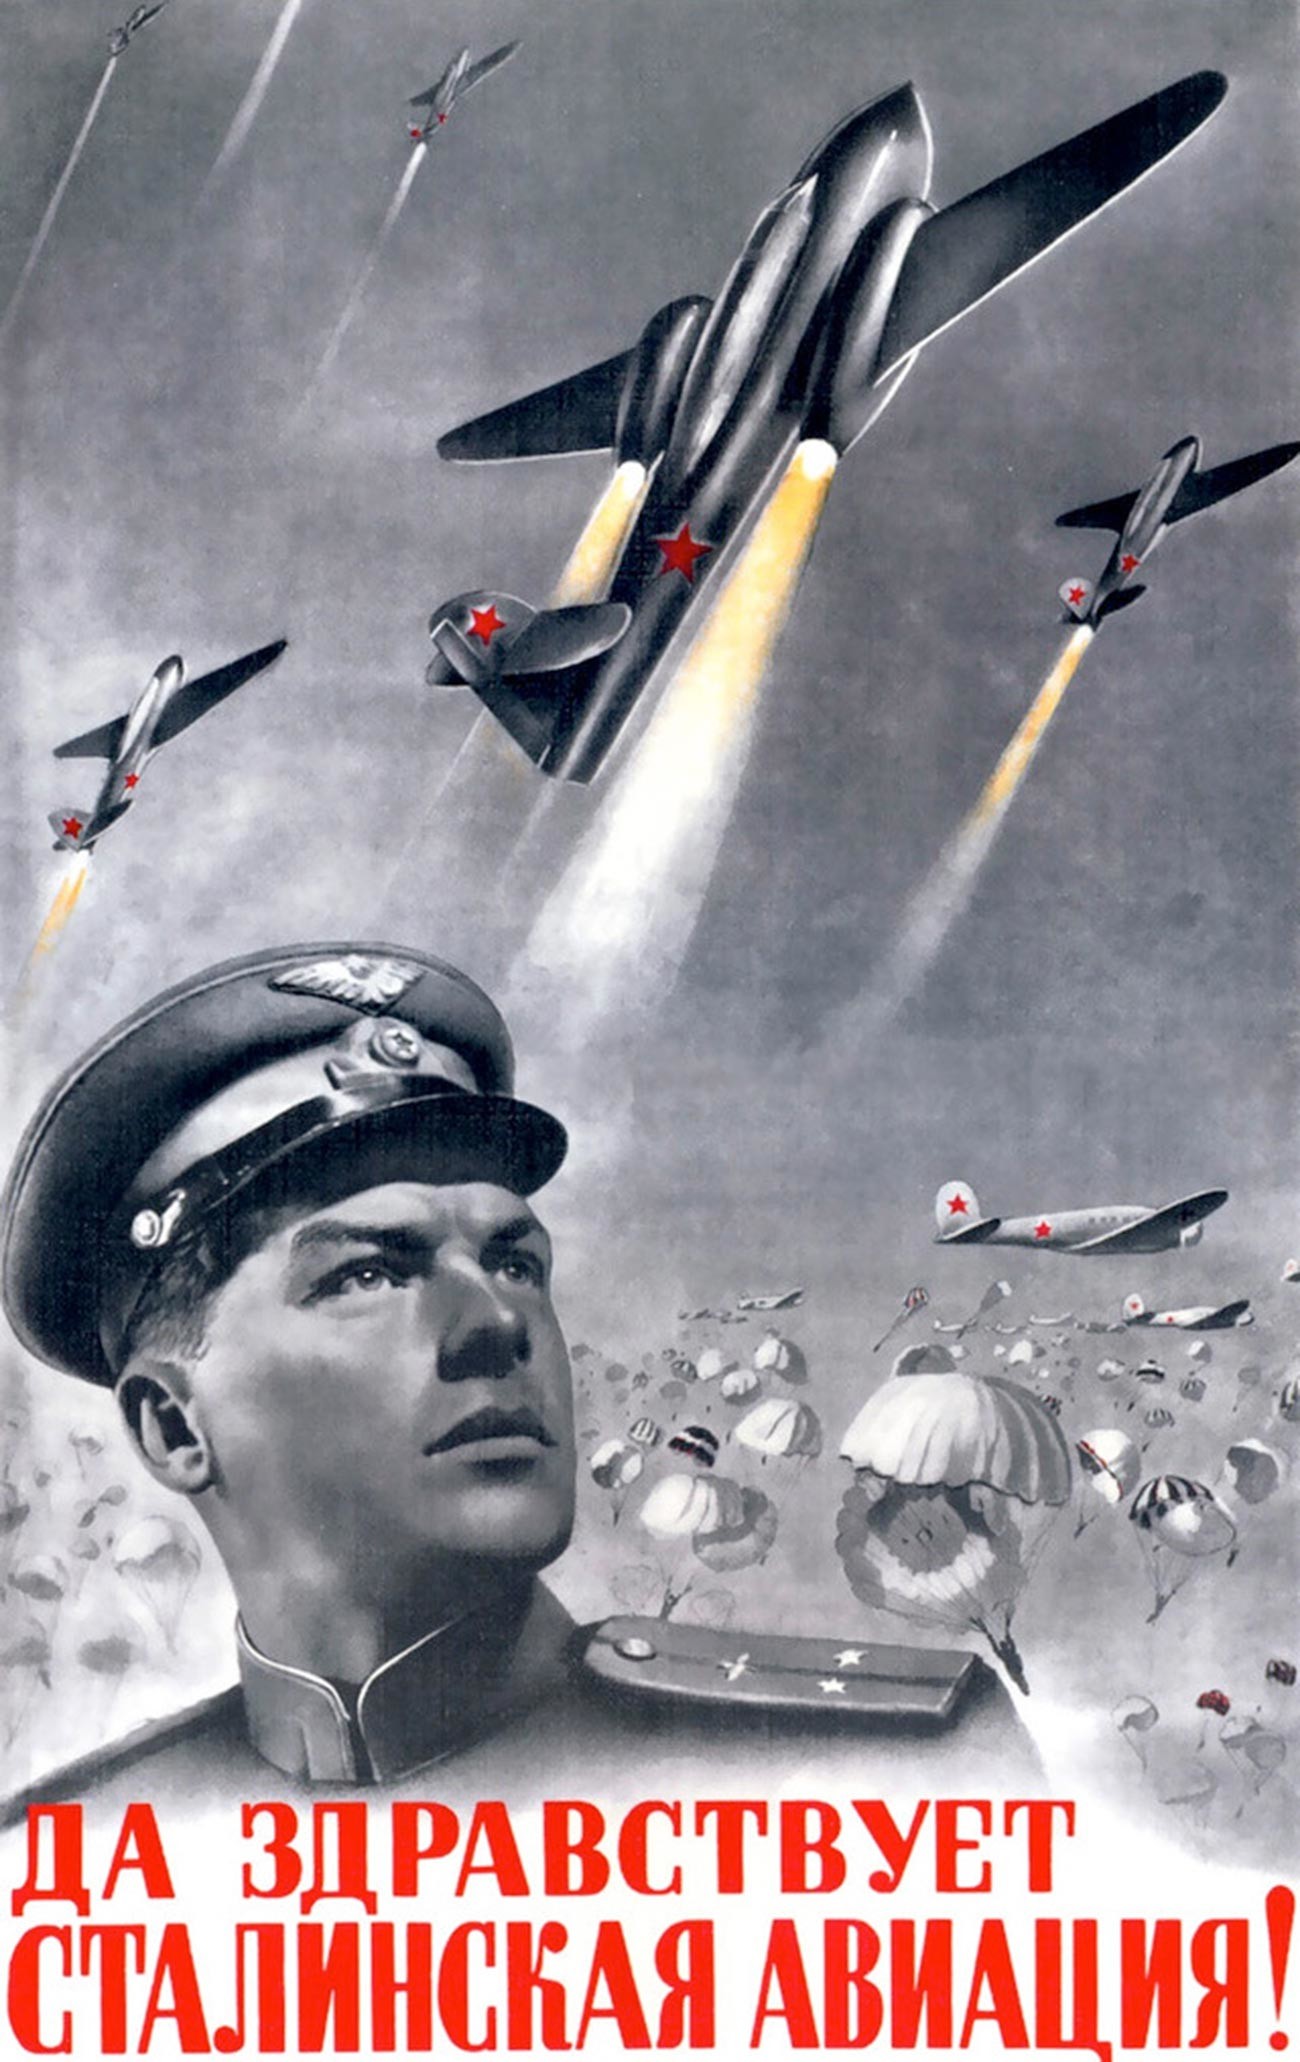 « Vive l’aviation de Staline ! »